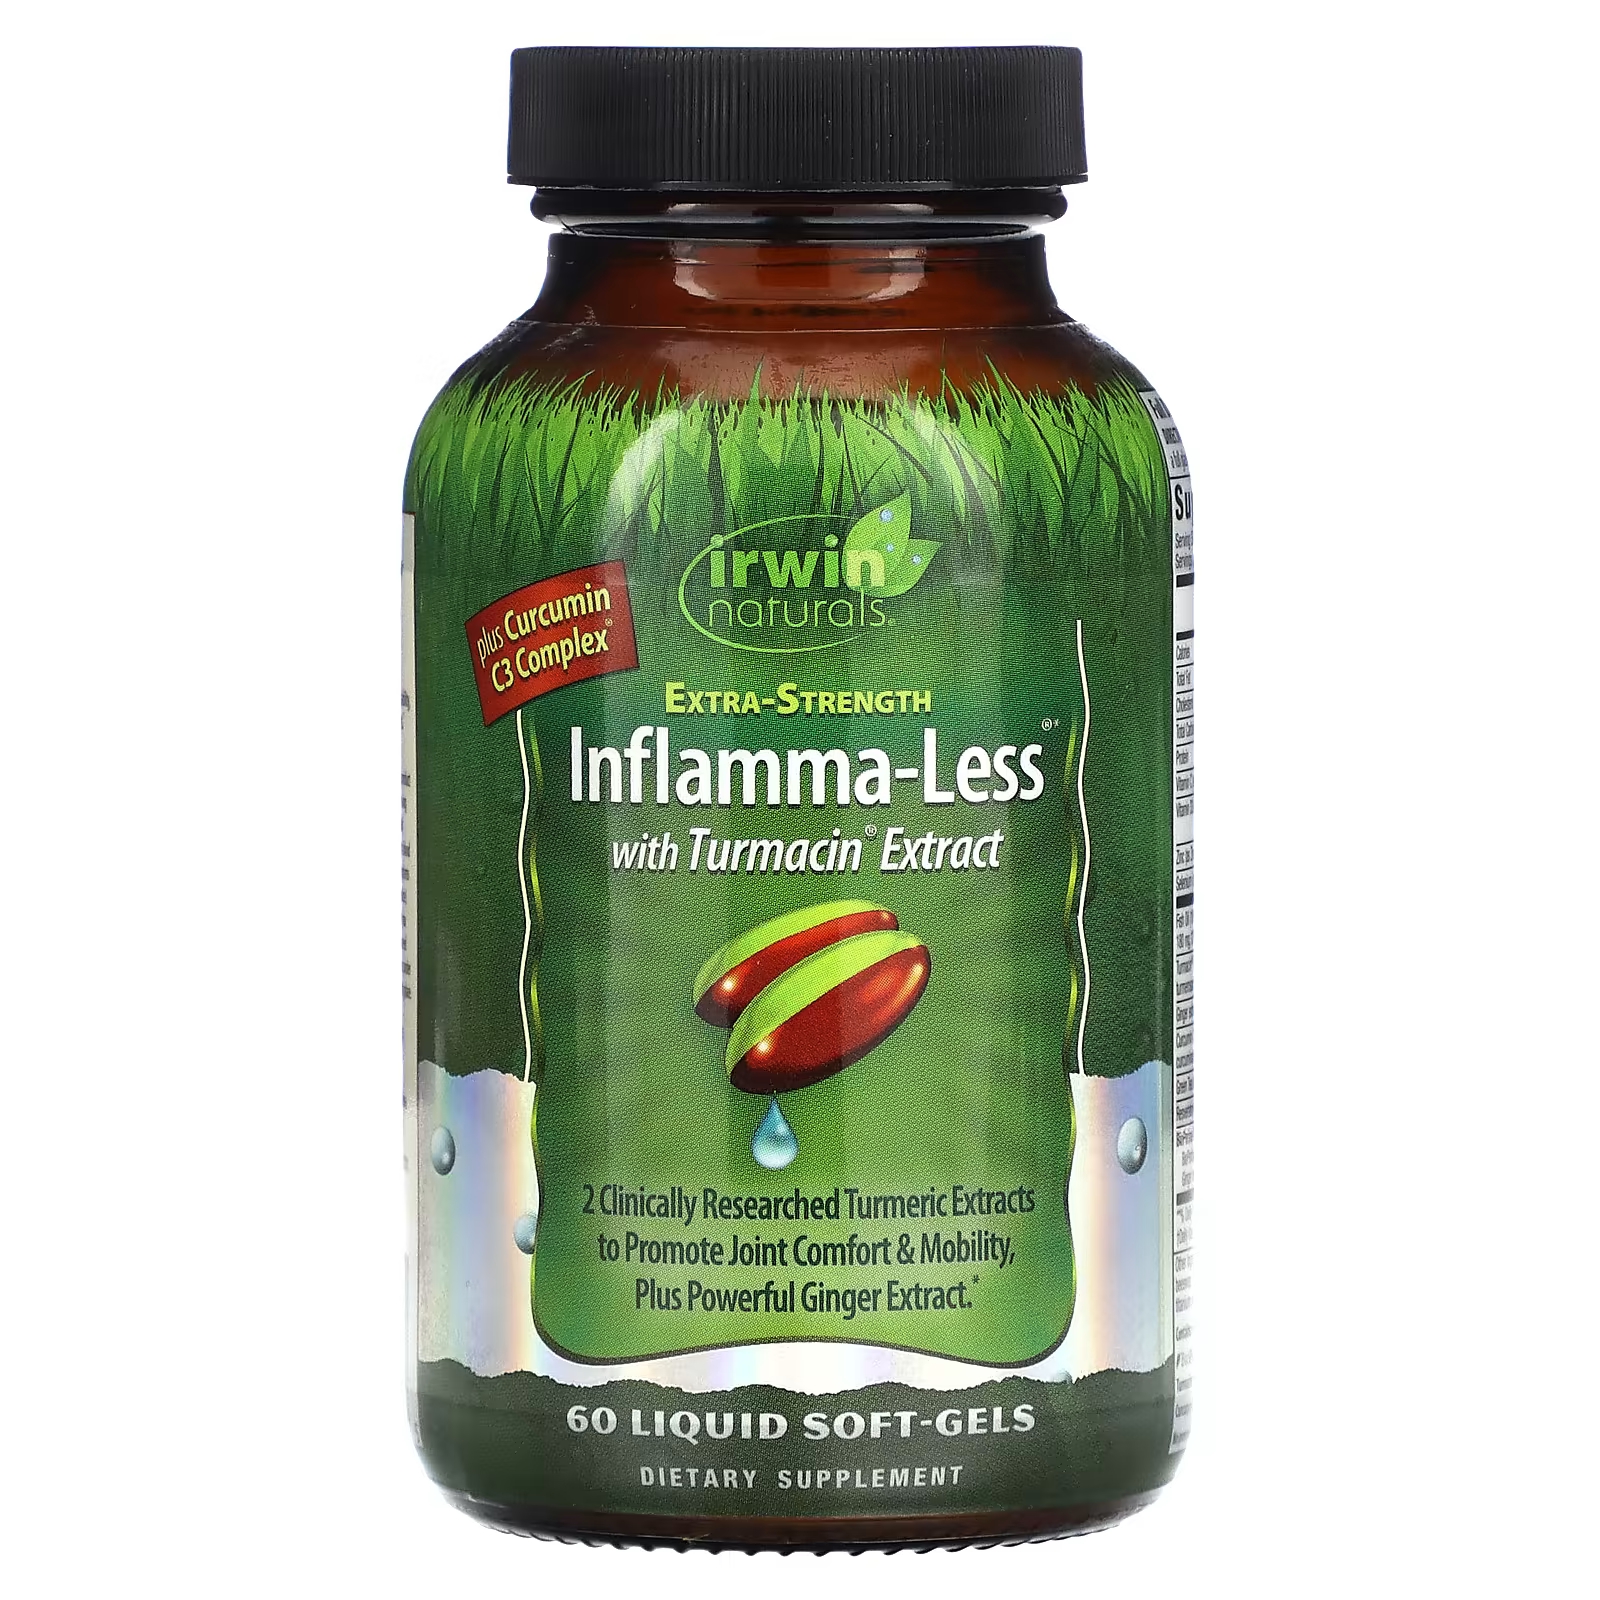 Пищевая добавка Irwin Naturals Inflamma-Less с экстрактом турмацина, 60 жидких капсул